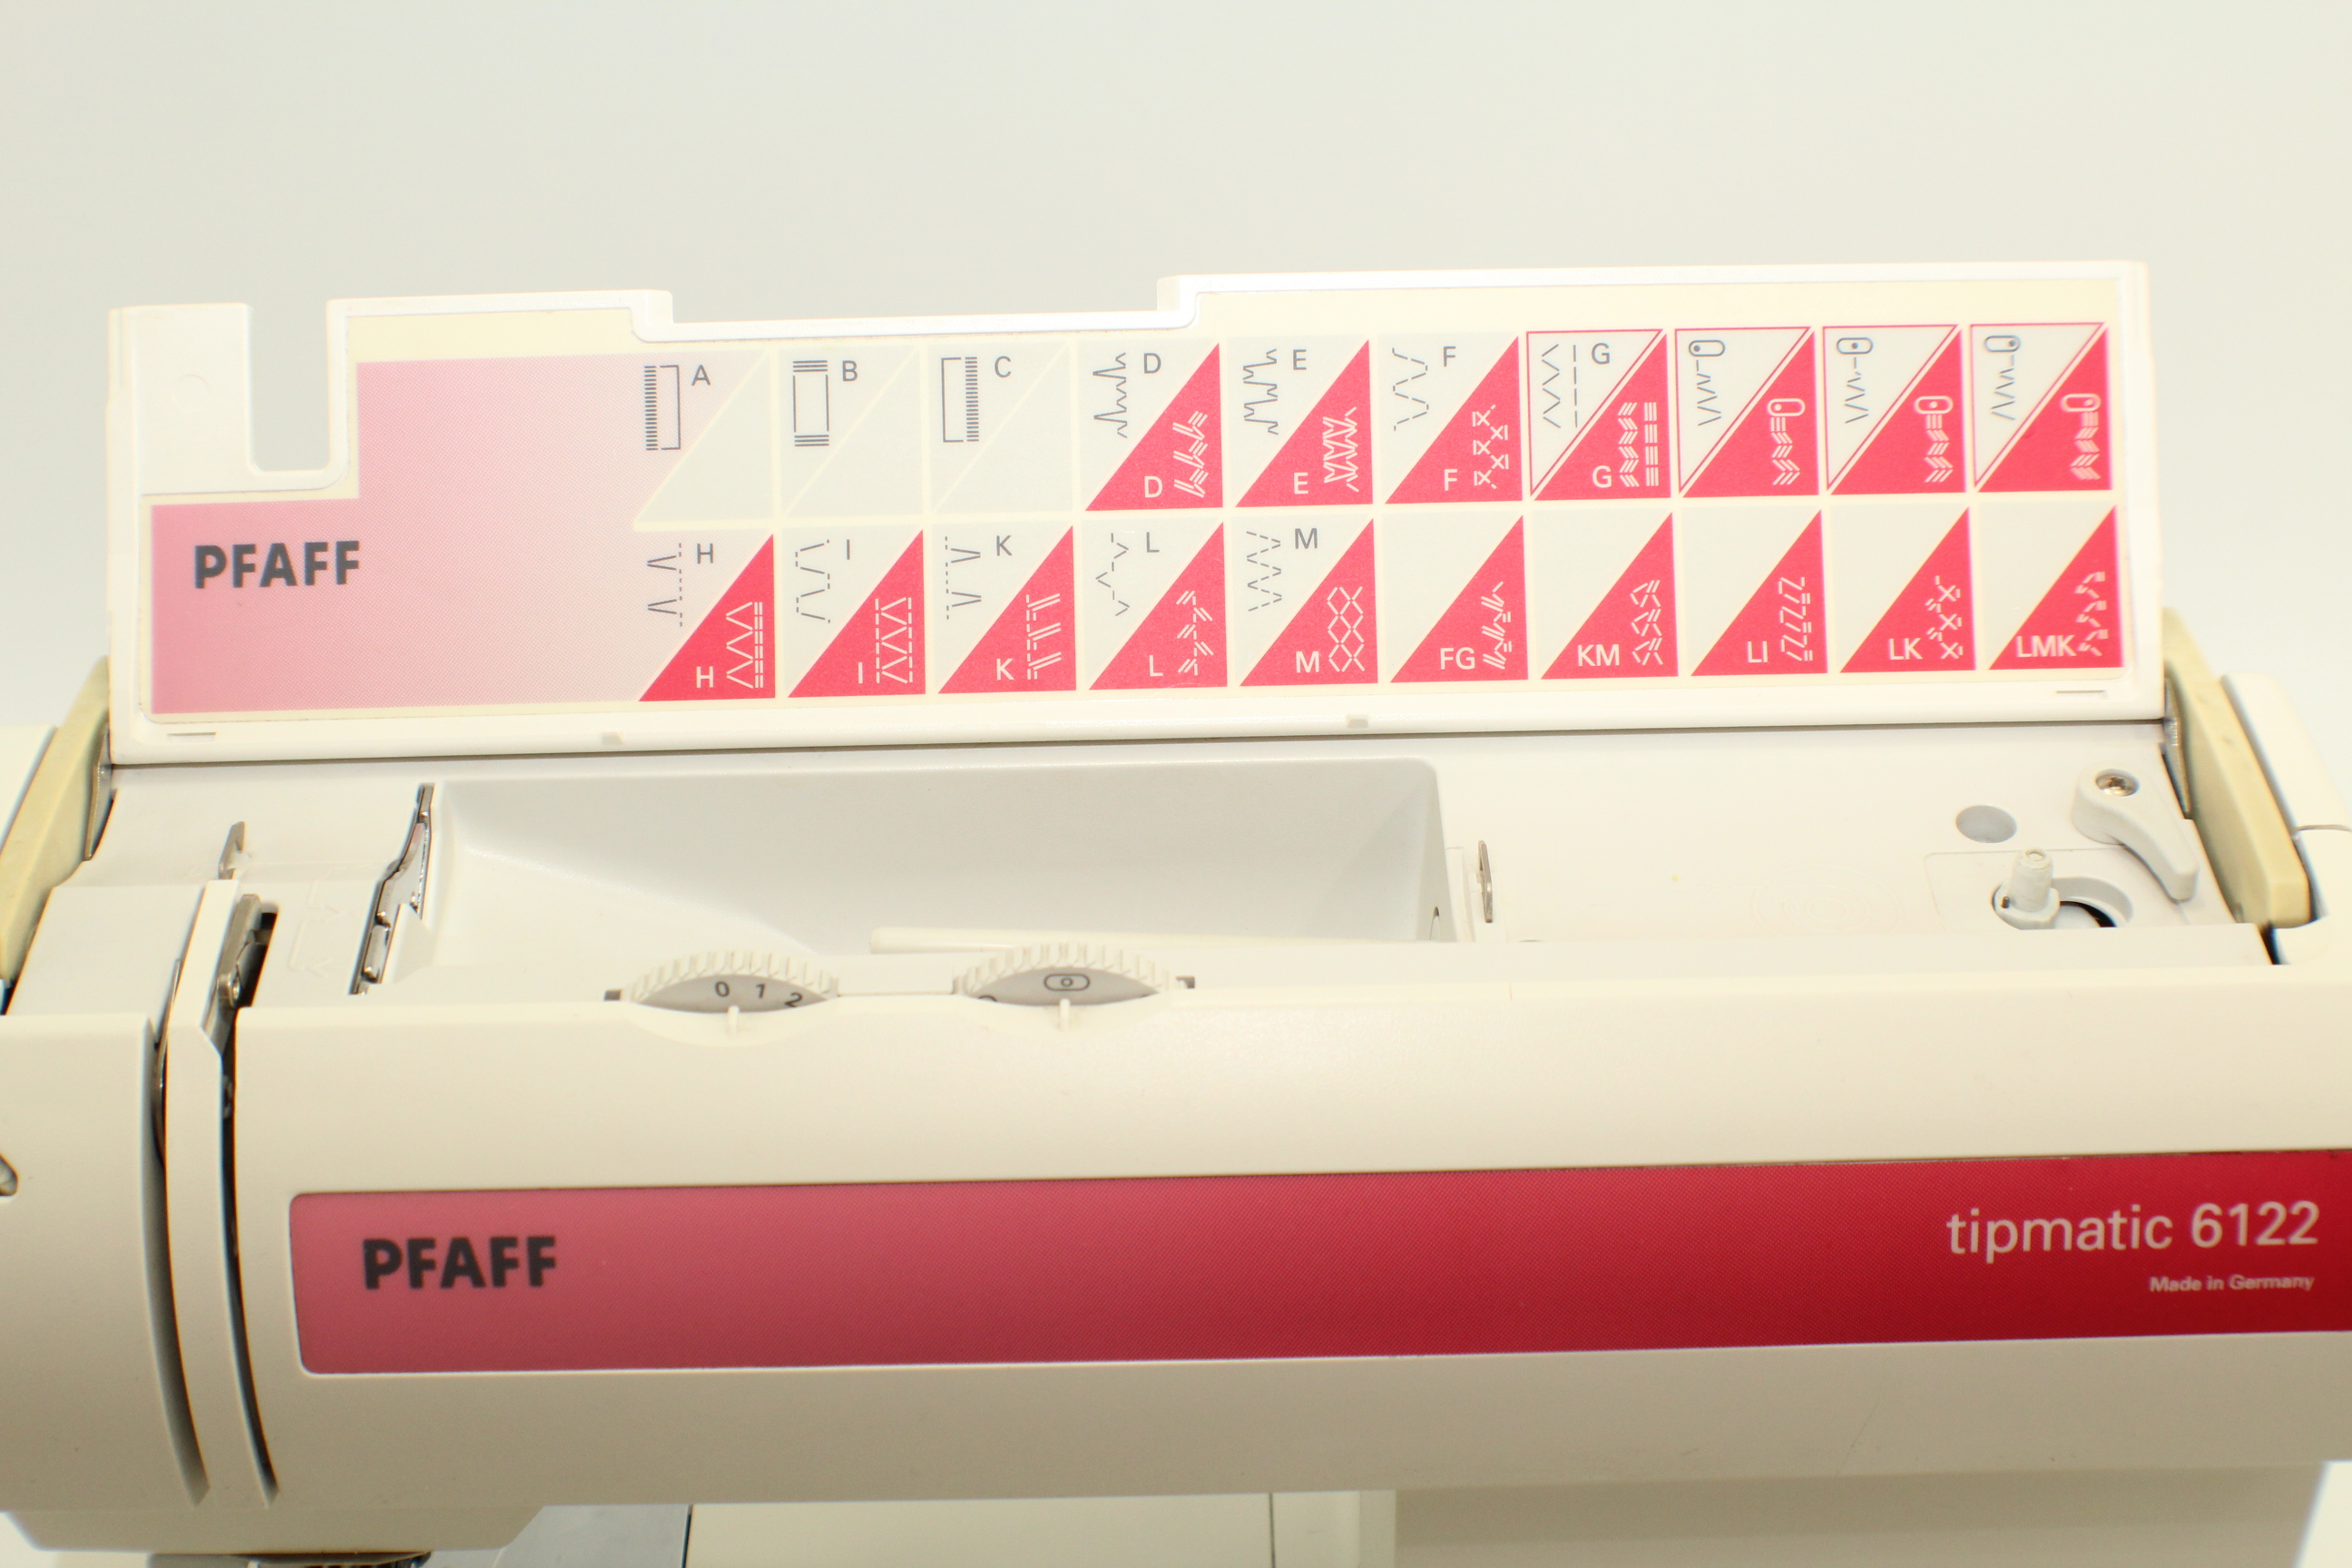 Paff tipmatic 6122 mit IDT System made in Germany gebraucht Seriennummer 34743290